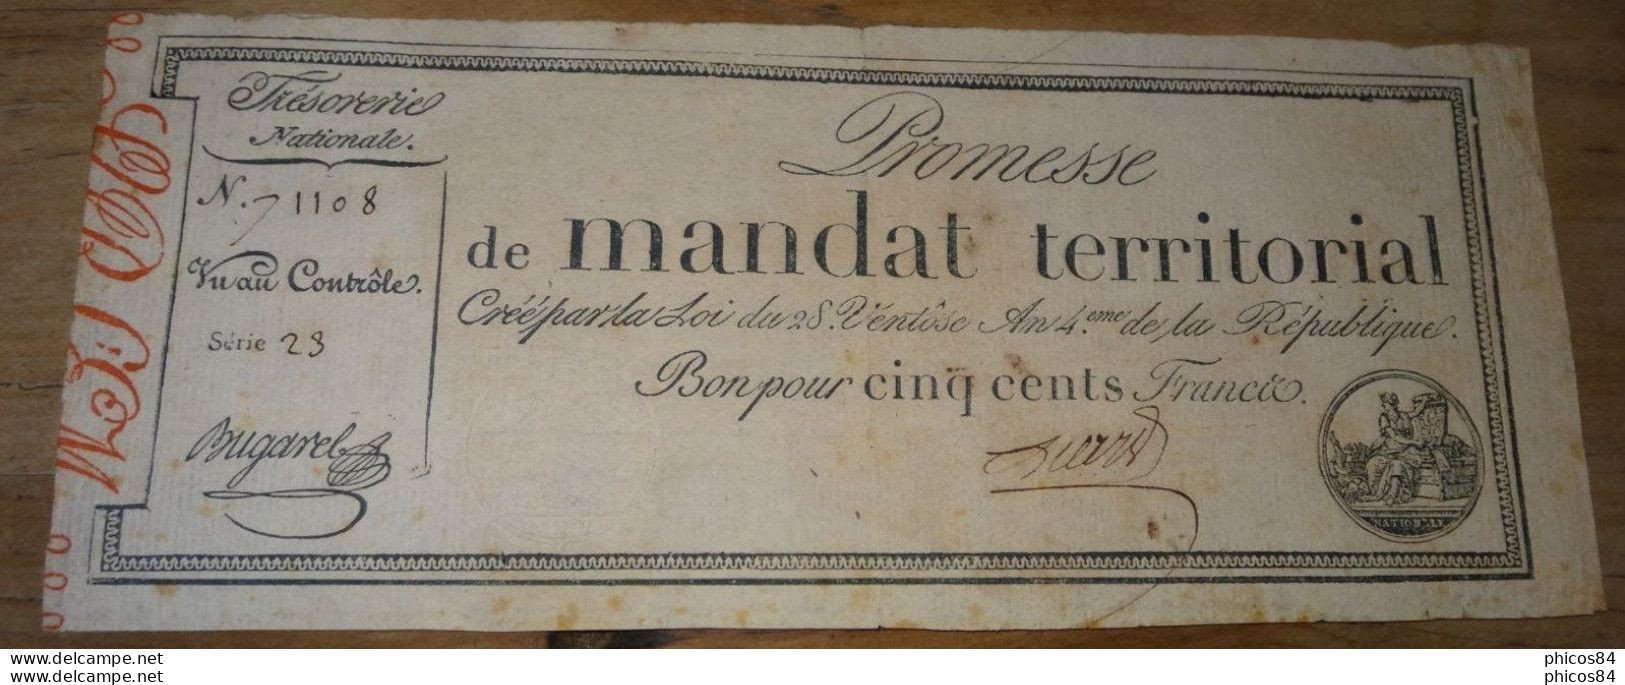 Exceptionnel Mandat Territorial 500 Francs De La Série 23 Avec Un Numéro Supérieur A 50000 - Assegnati